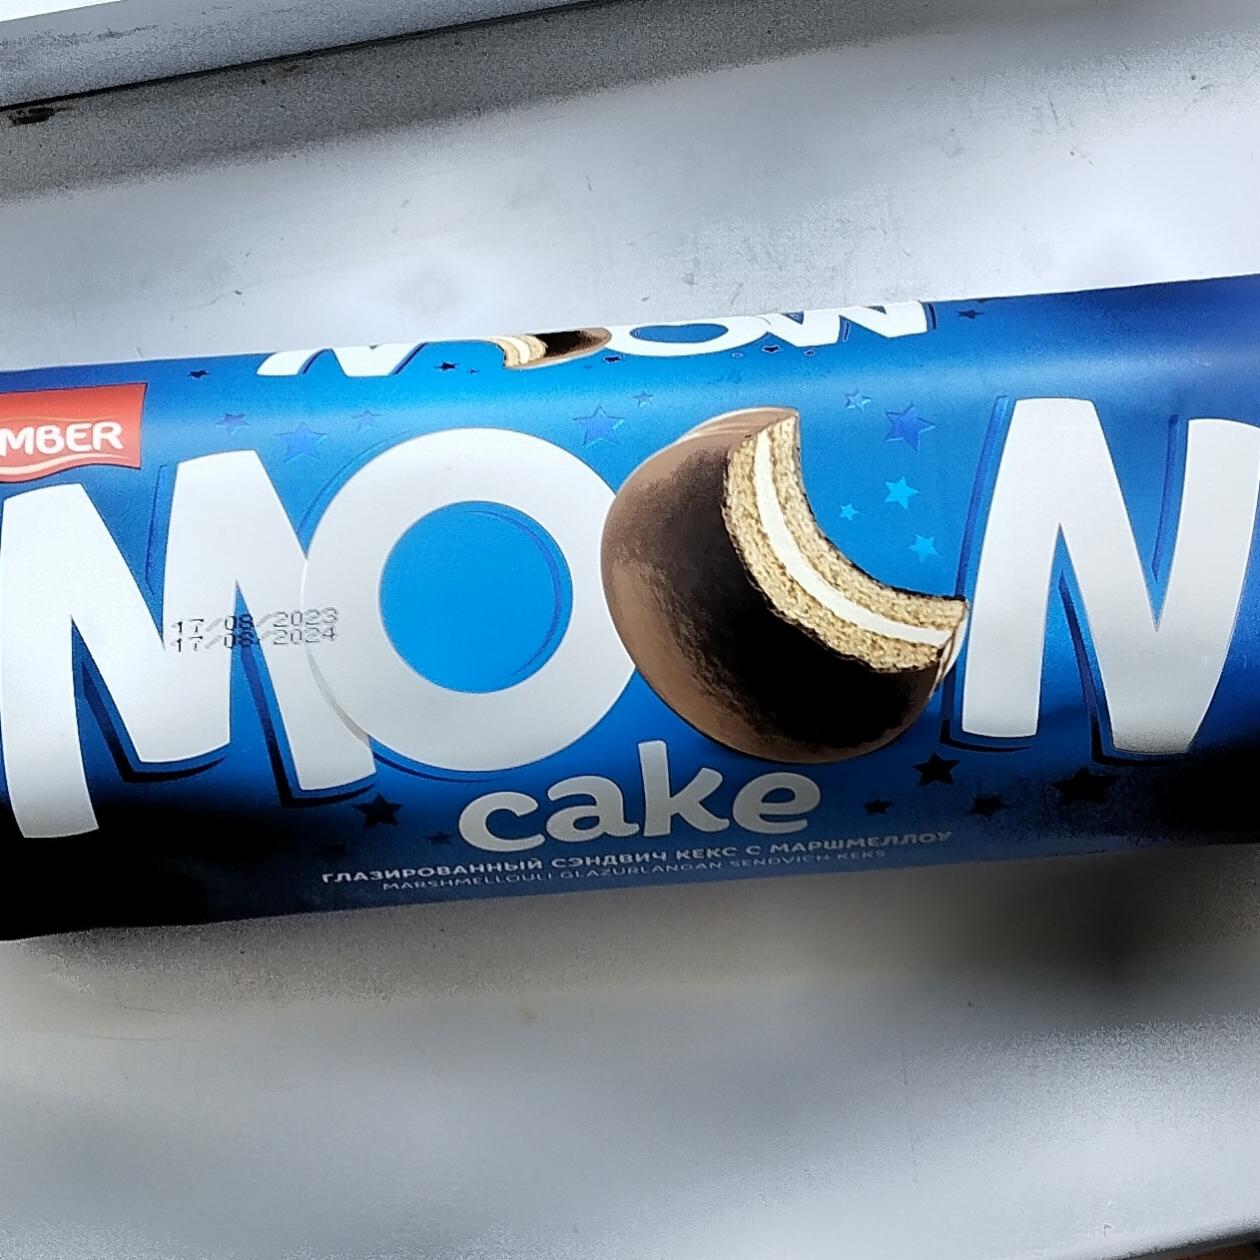 Фото - глазированный сэндвич кекс с маршмеллоу Moon Cake Krember